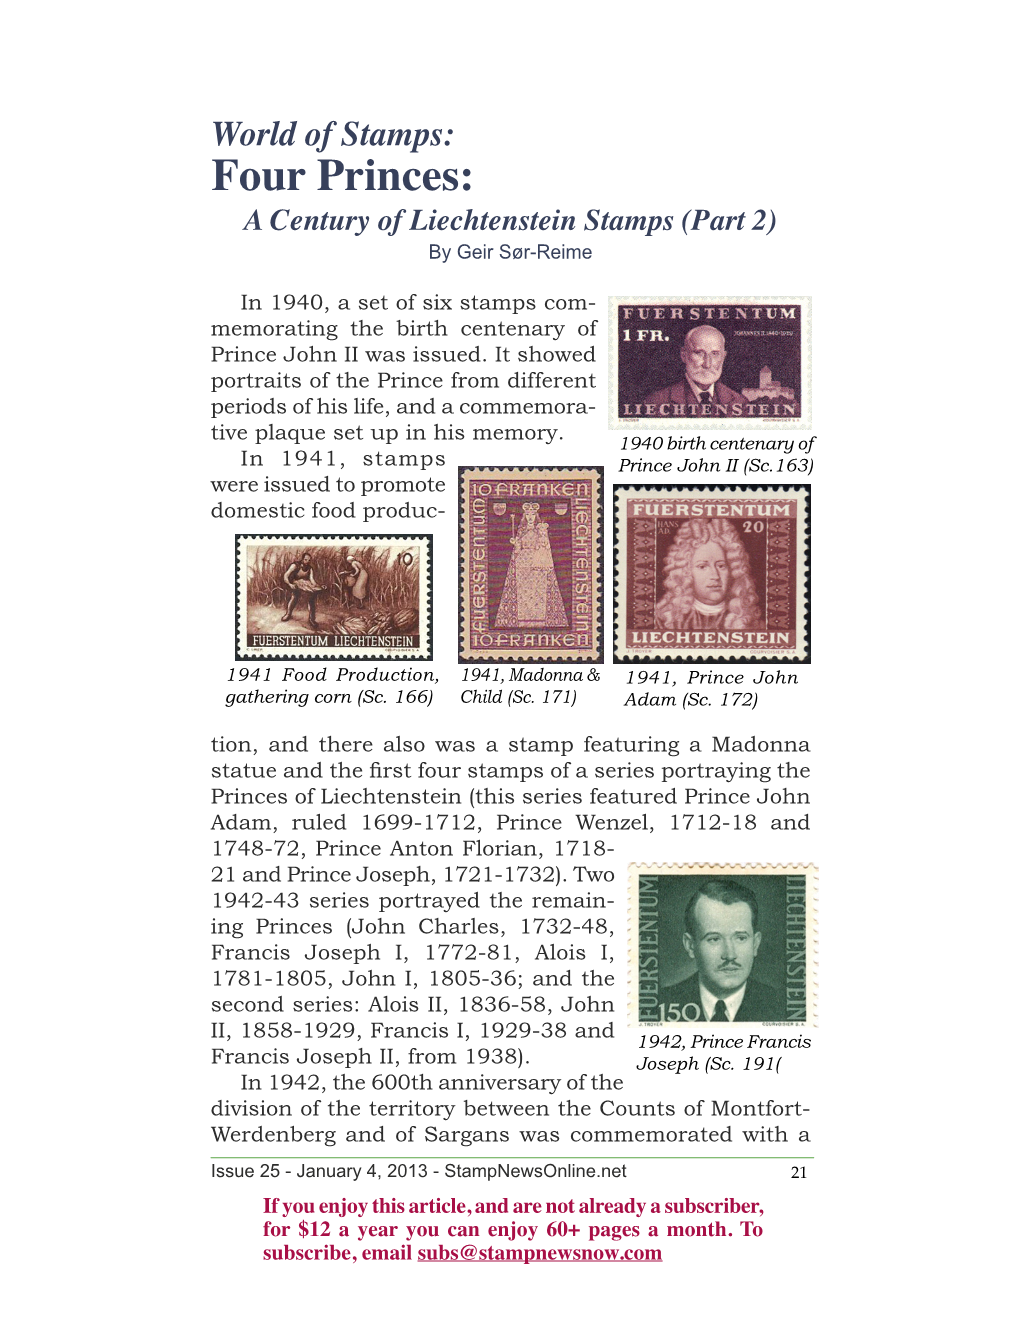 Four Princes: a Century of Liechtenstein Stamps (Part 2) by Geir Sør-Reime